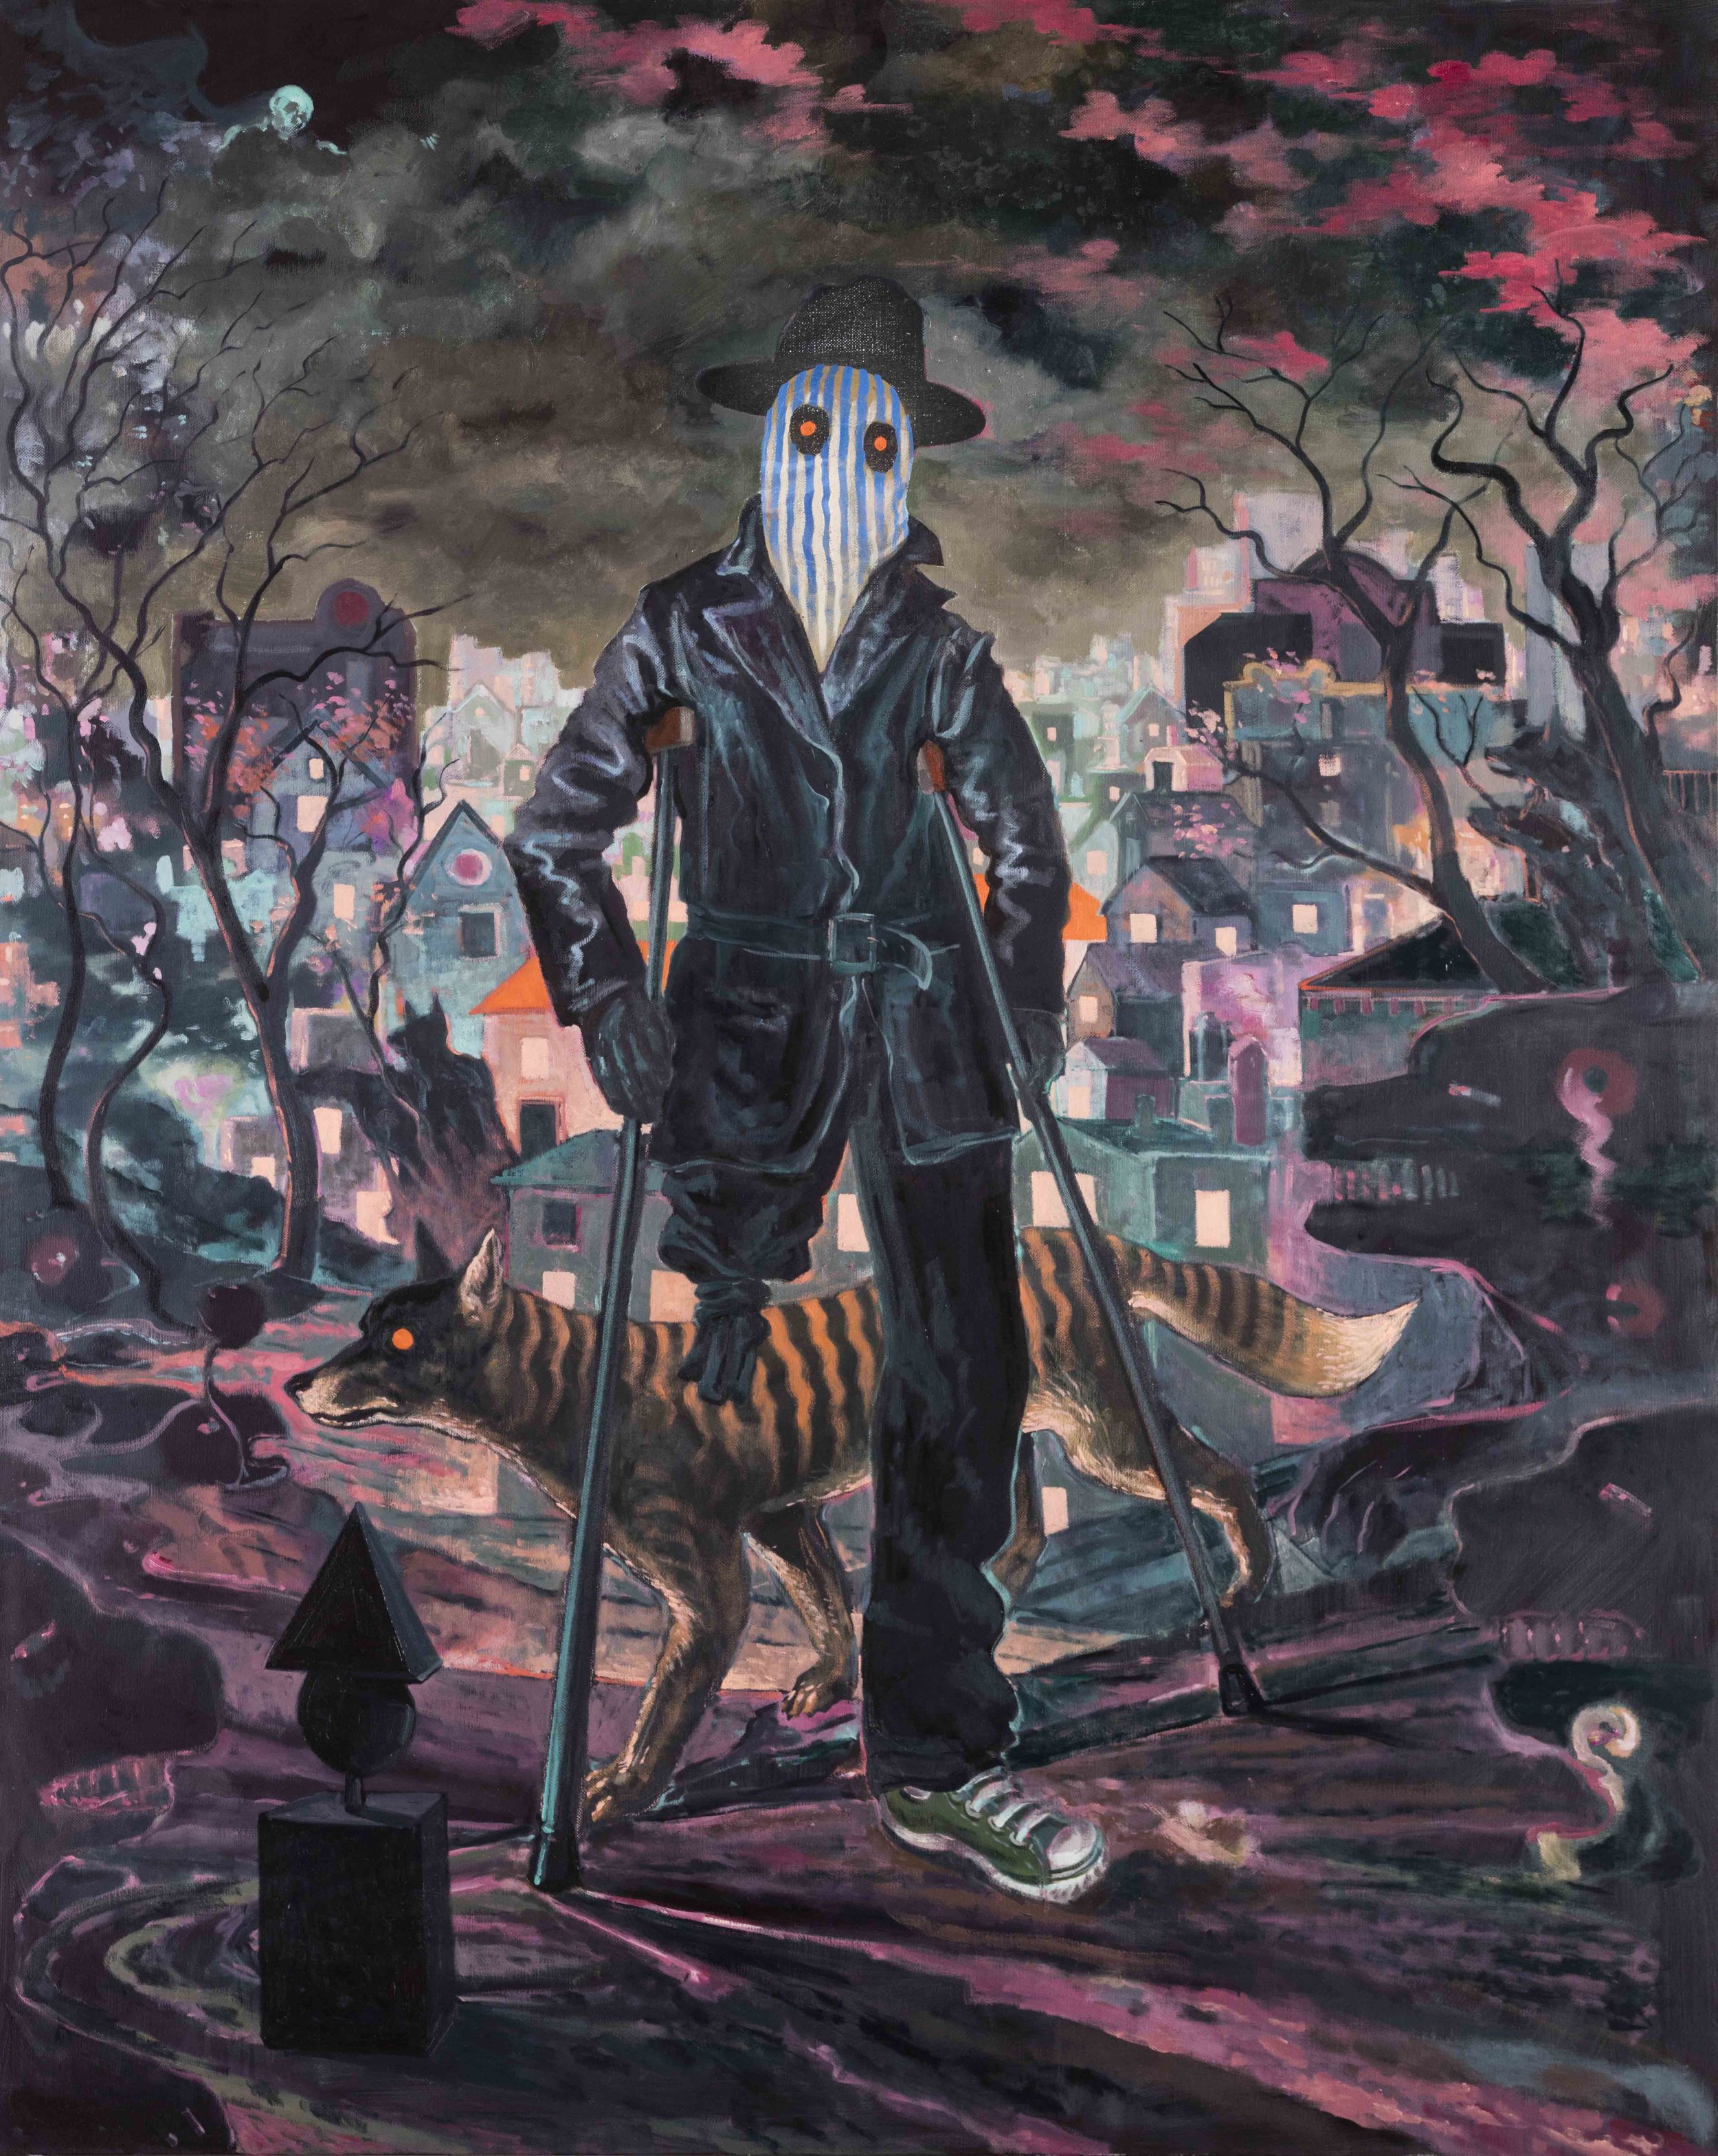  Michael Vale,&nbsp; The Drifter's Escape , 2015/16, oil on linen, 152 x 122cm 